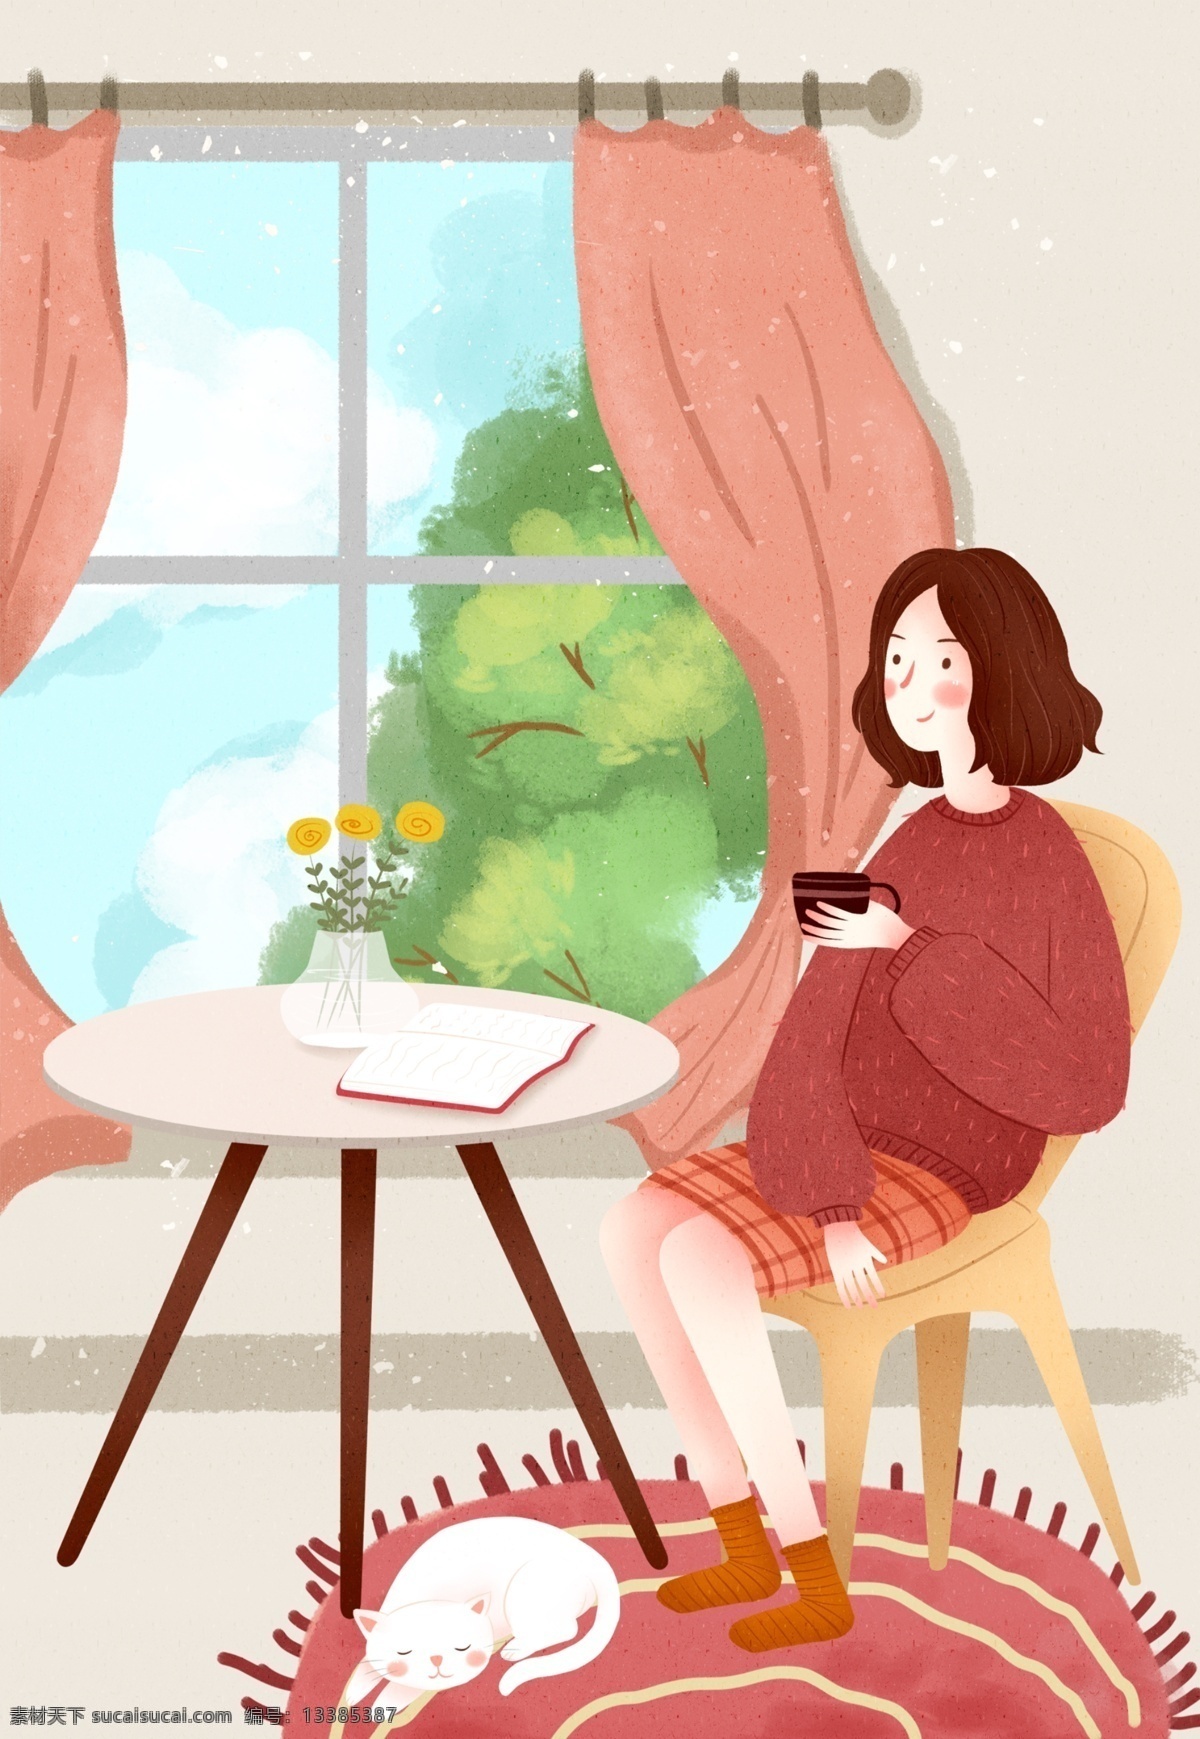 可爱 女生 喝 咖啡 休闲 娱乐 卡通 背景 可爱女生 喝咖啡 窗户 桌子 温馨